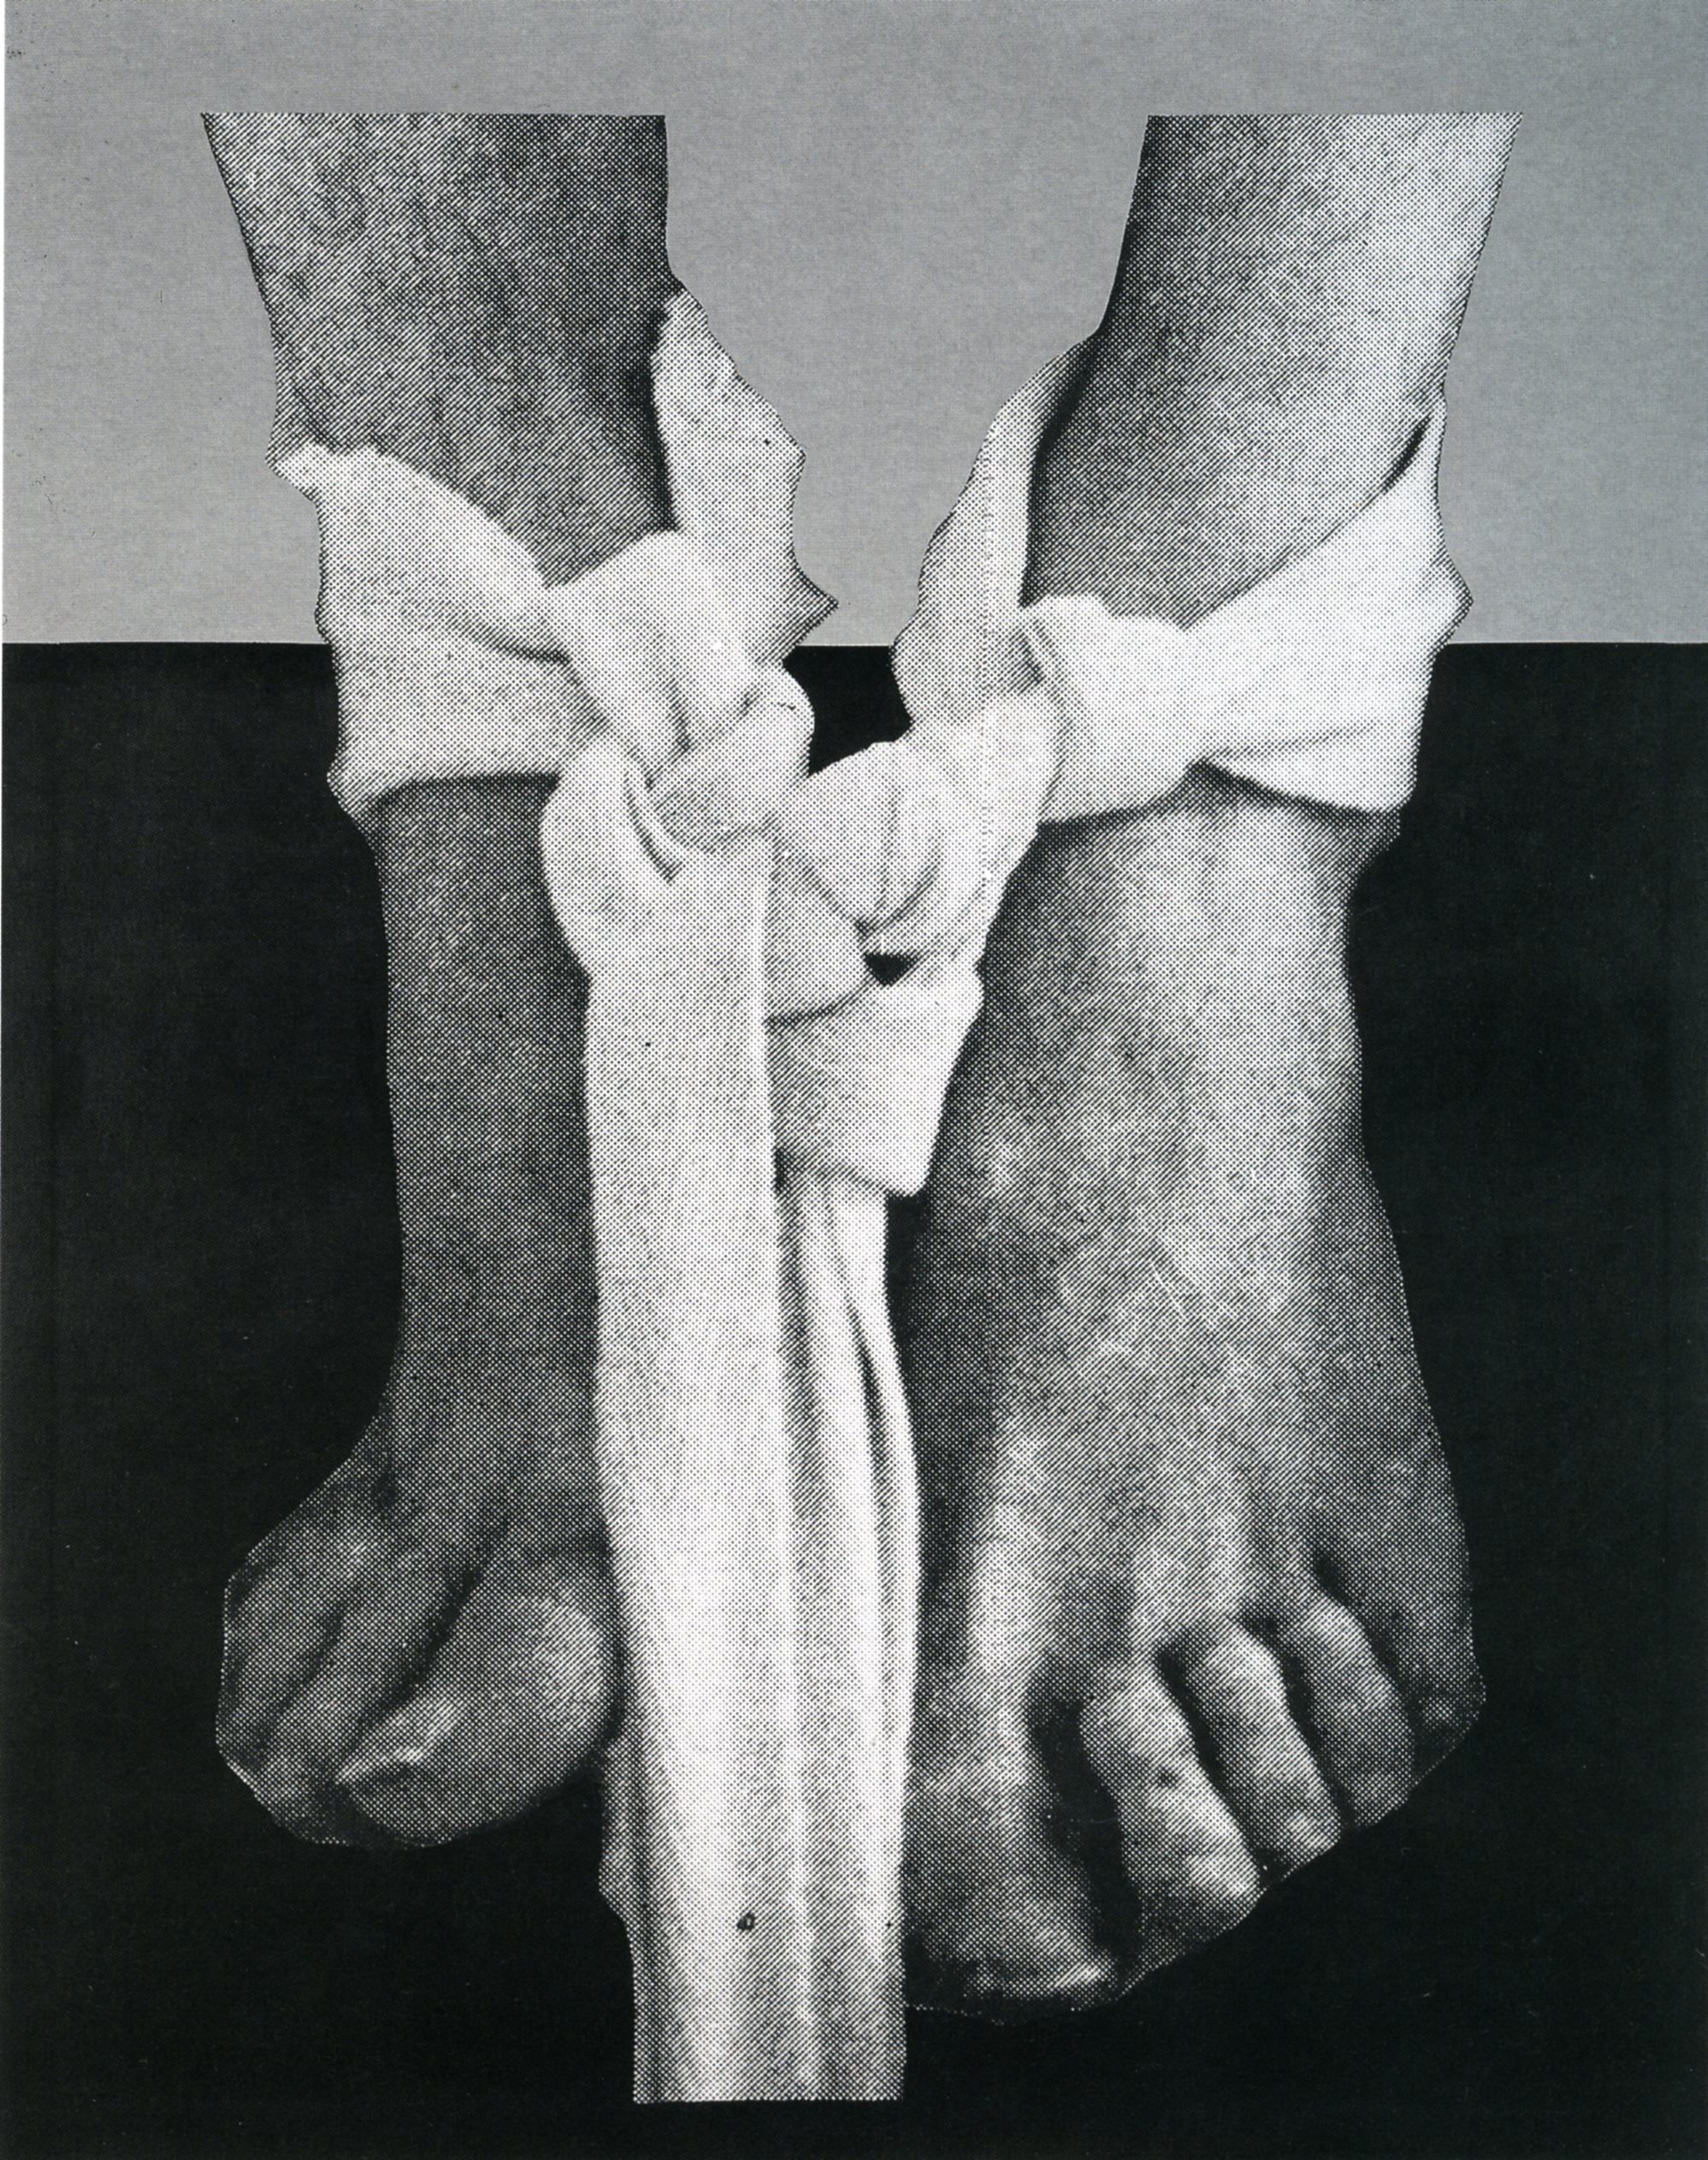 Dario Villalba, Pies Vendados, 1976, Mixed media on canvas photolinen, 250 x 200 cm